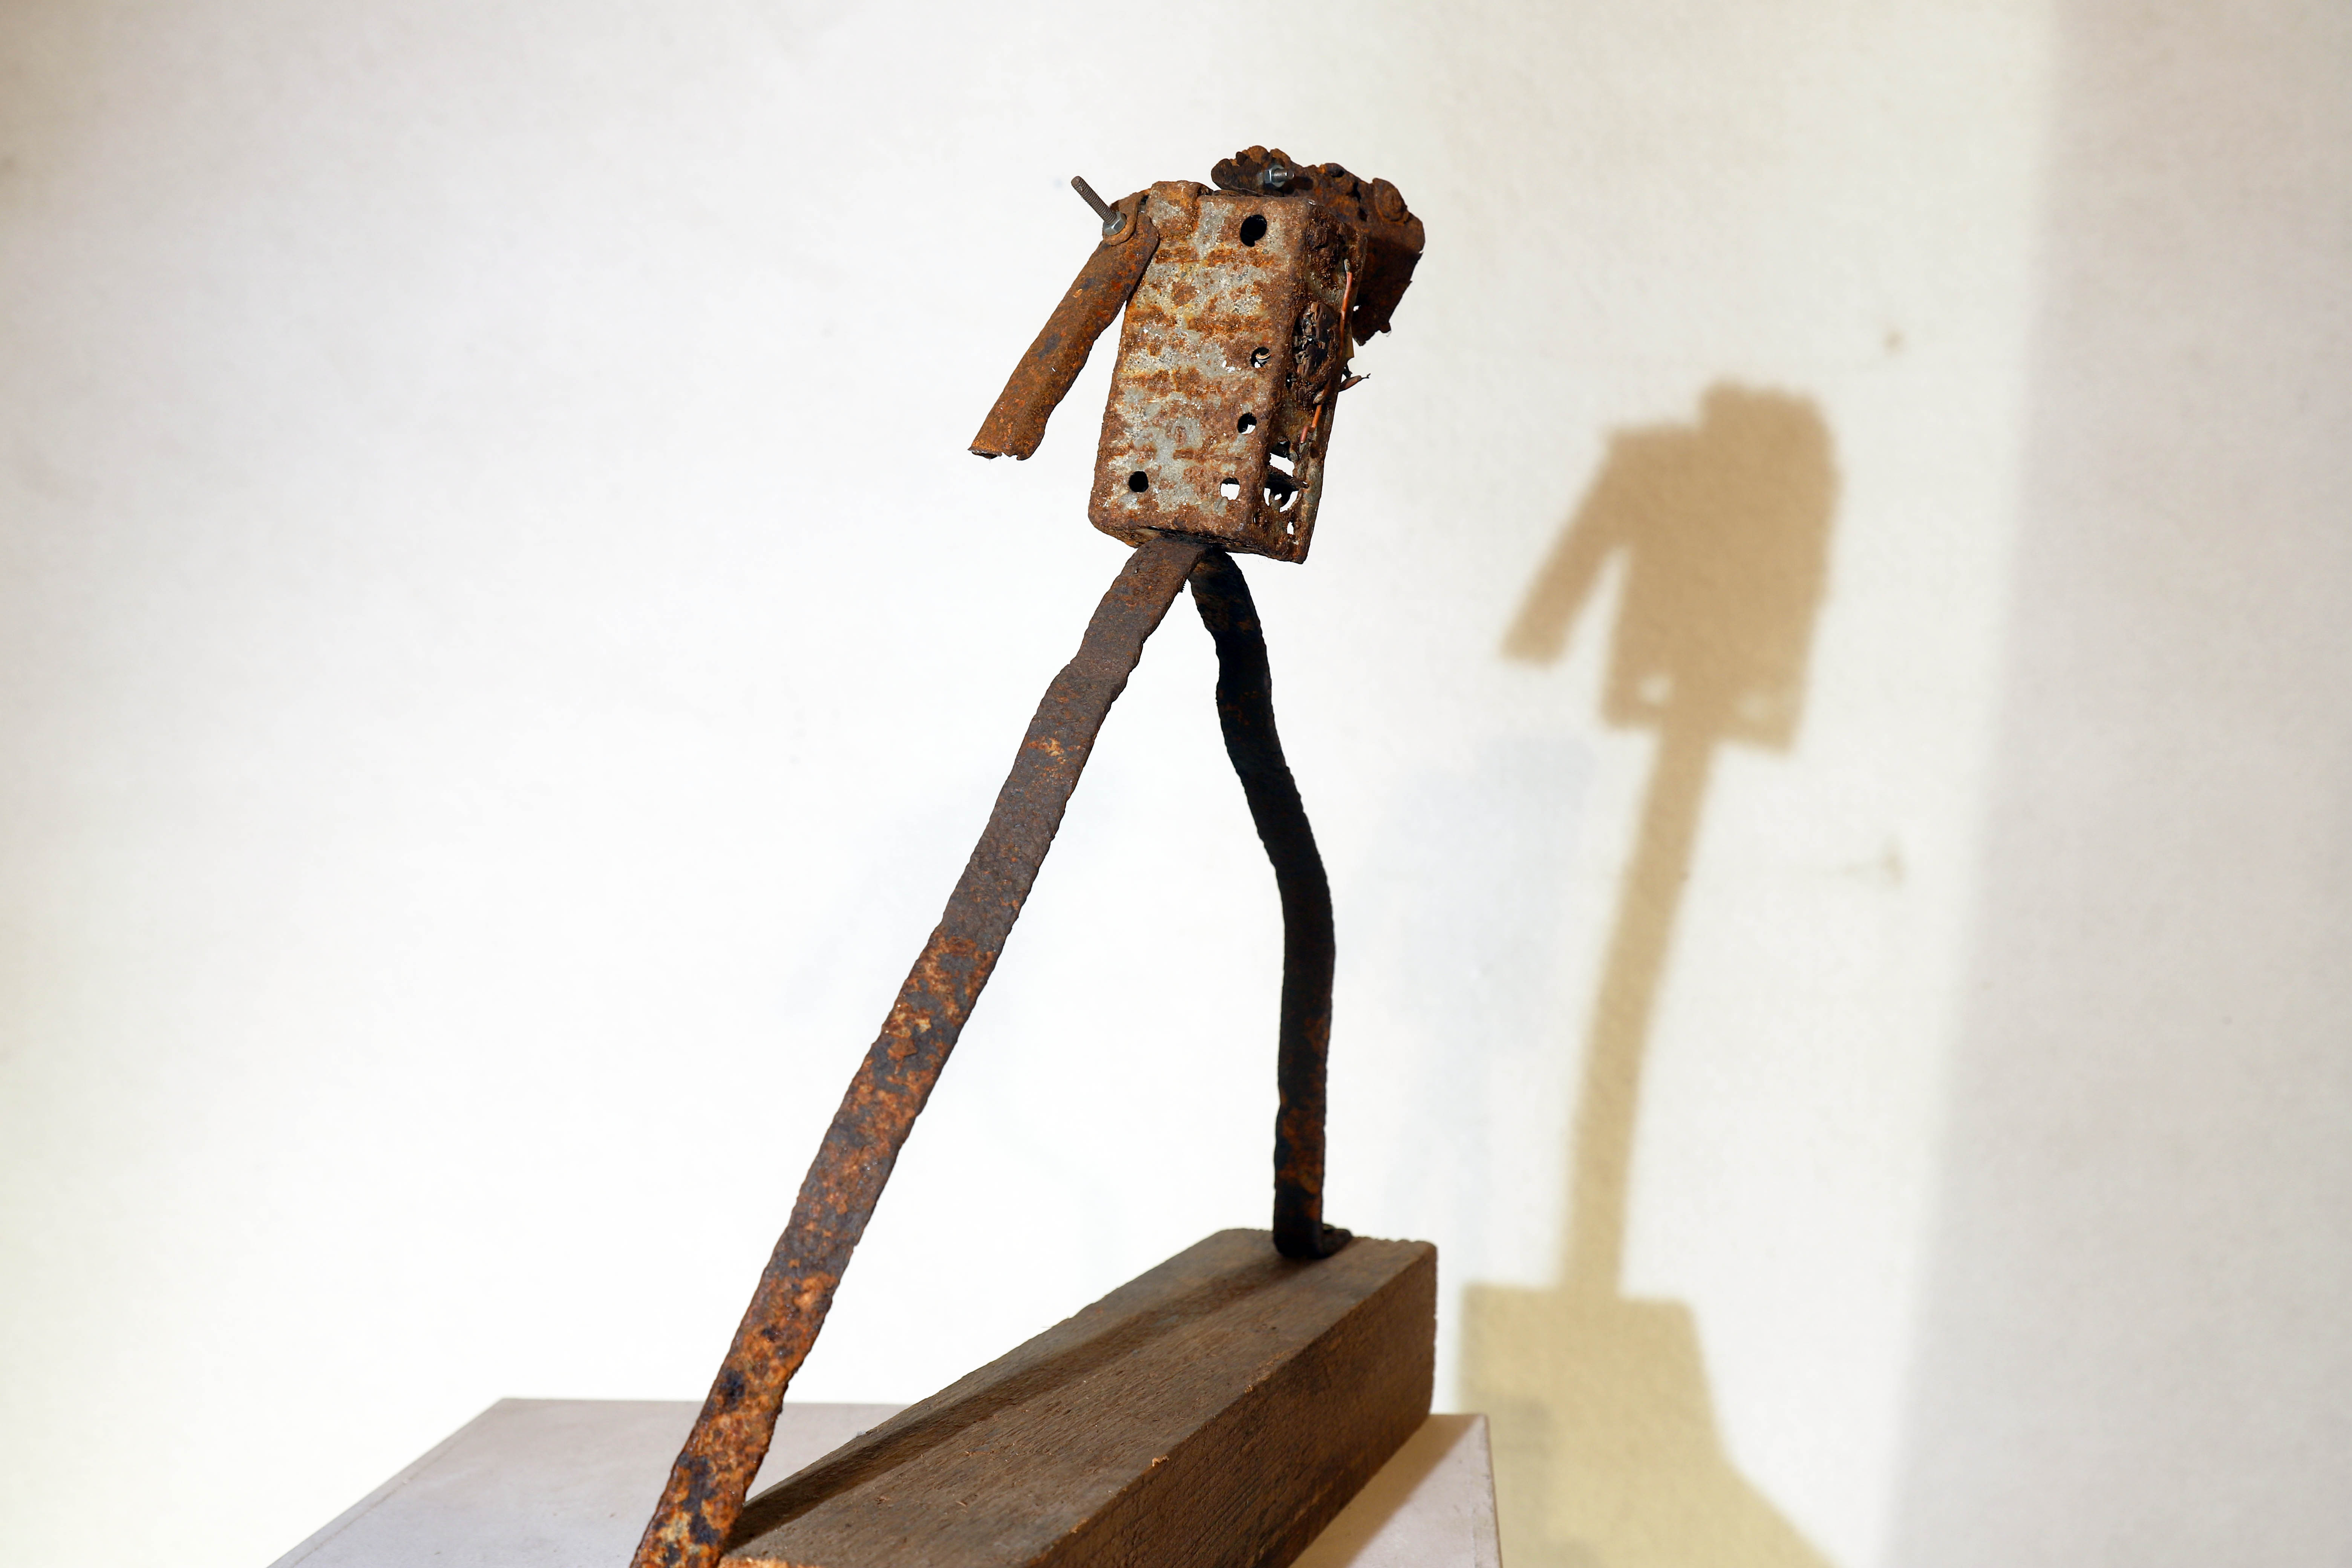 Antonio Panzuto - sculture Ruggini - Figura danzante 7 - Rusty sculpture Dancing figure